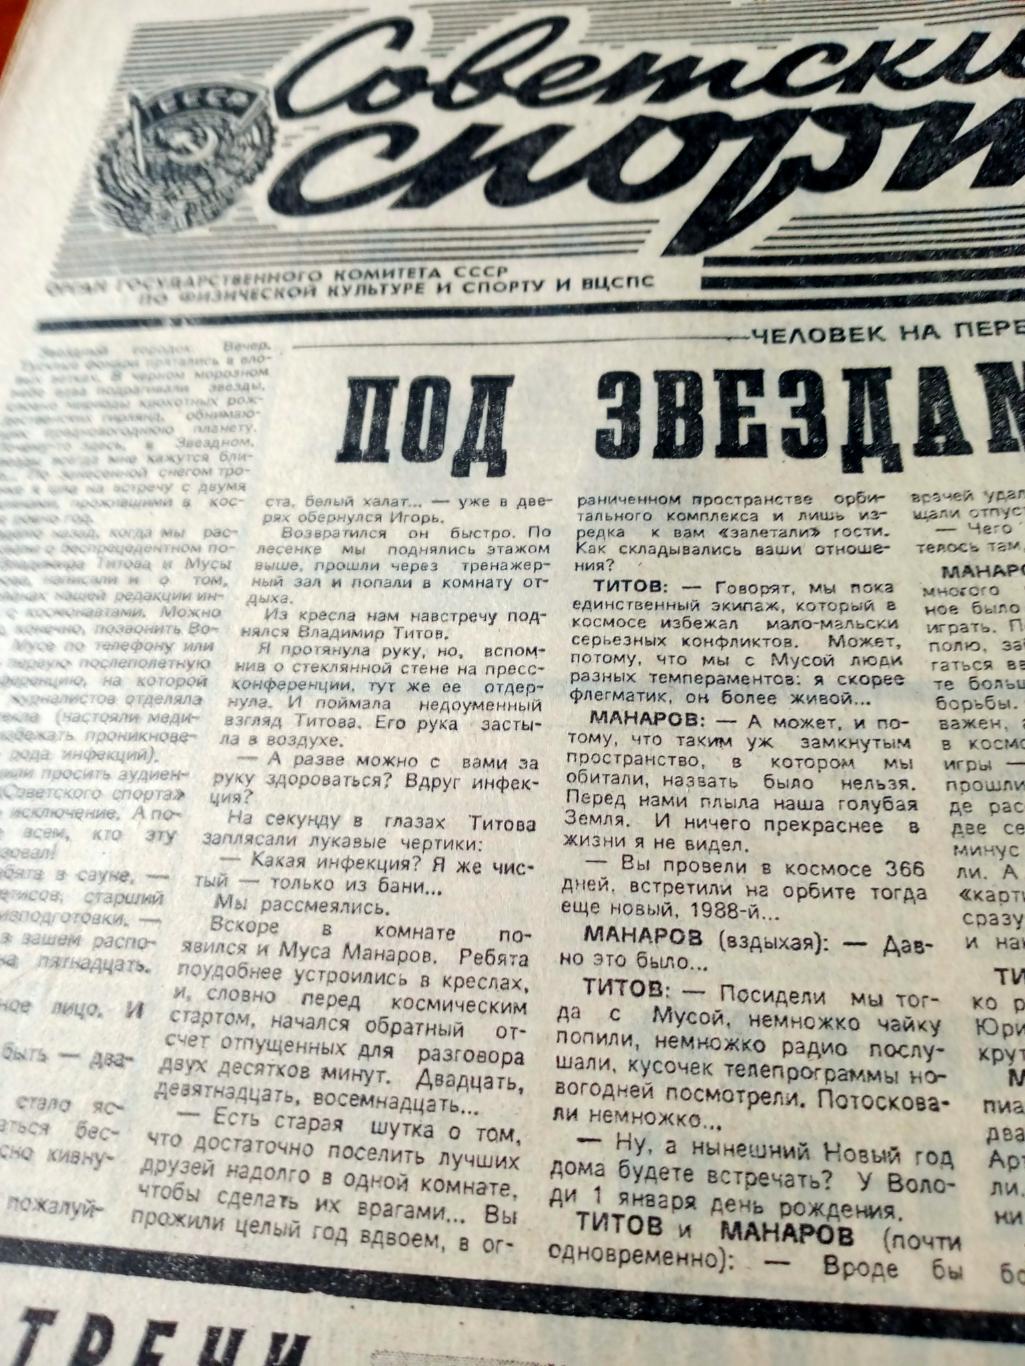 ПРОЩАЙ ОЛИМПИЙСКИЙ ГОД! Советский спорт. 1988 год, 31 декабря